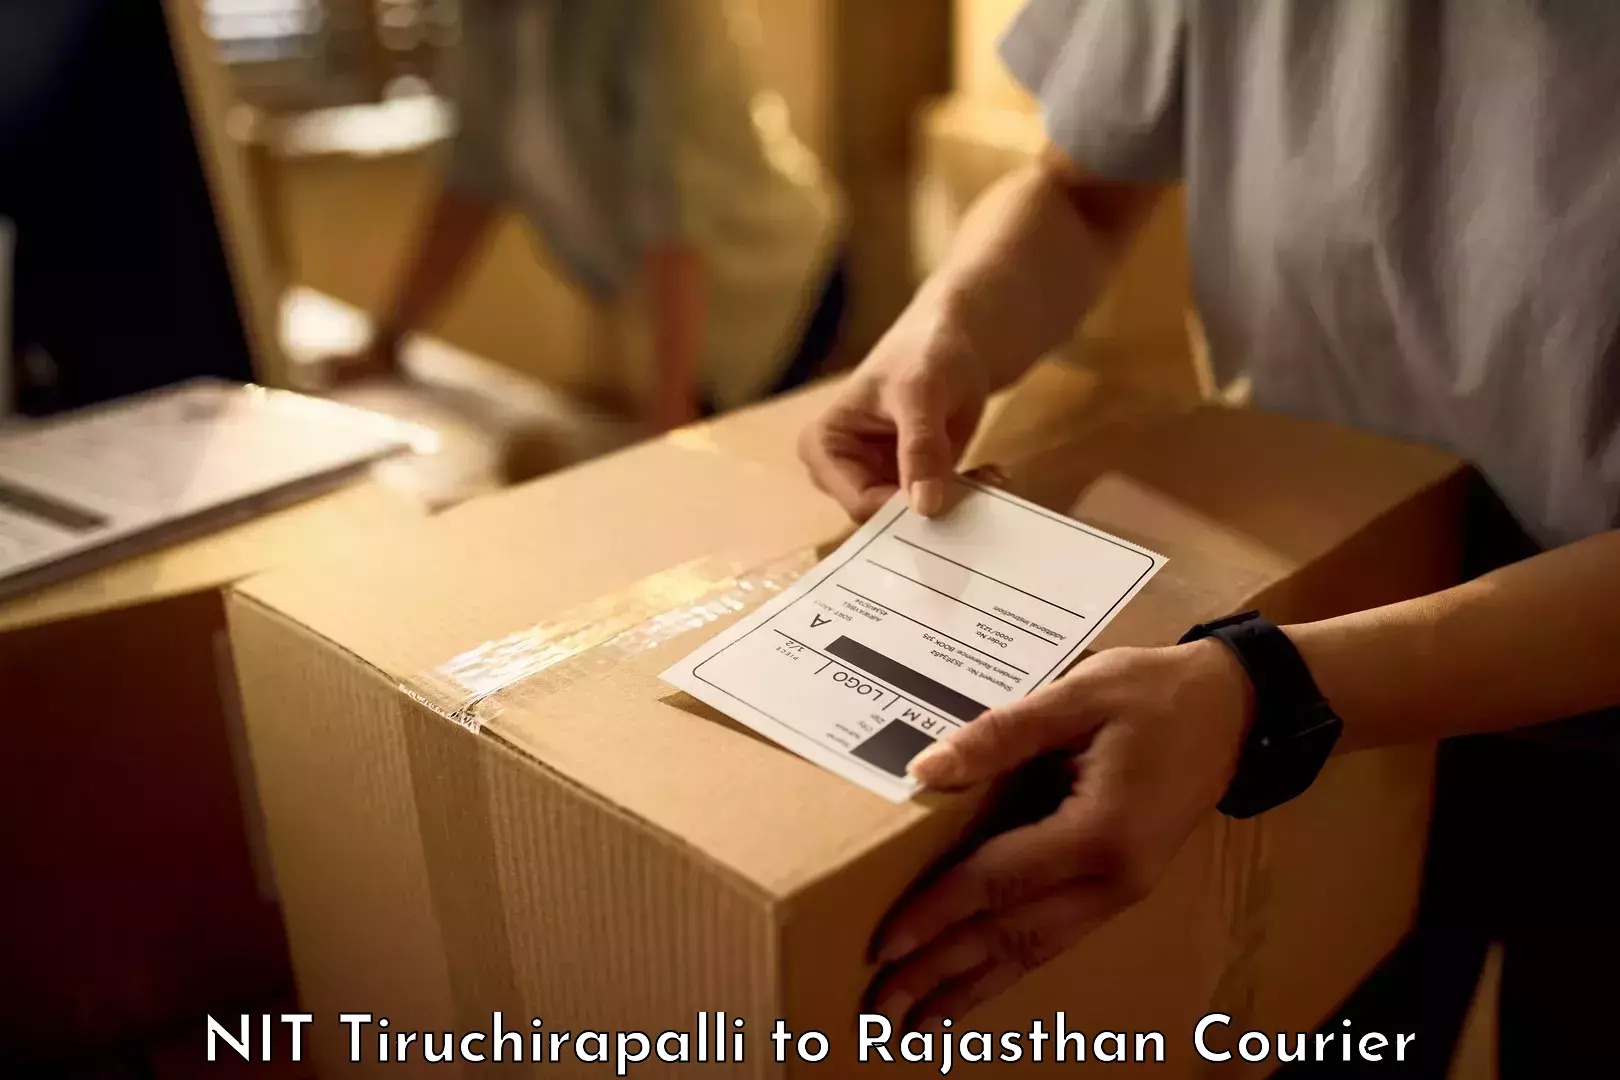 Baggage handling services NIT Tiruchirapalli to Rajasthan